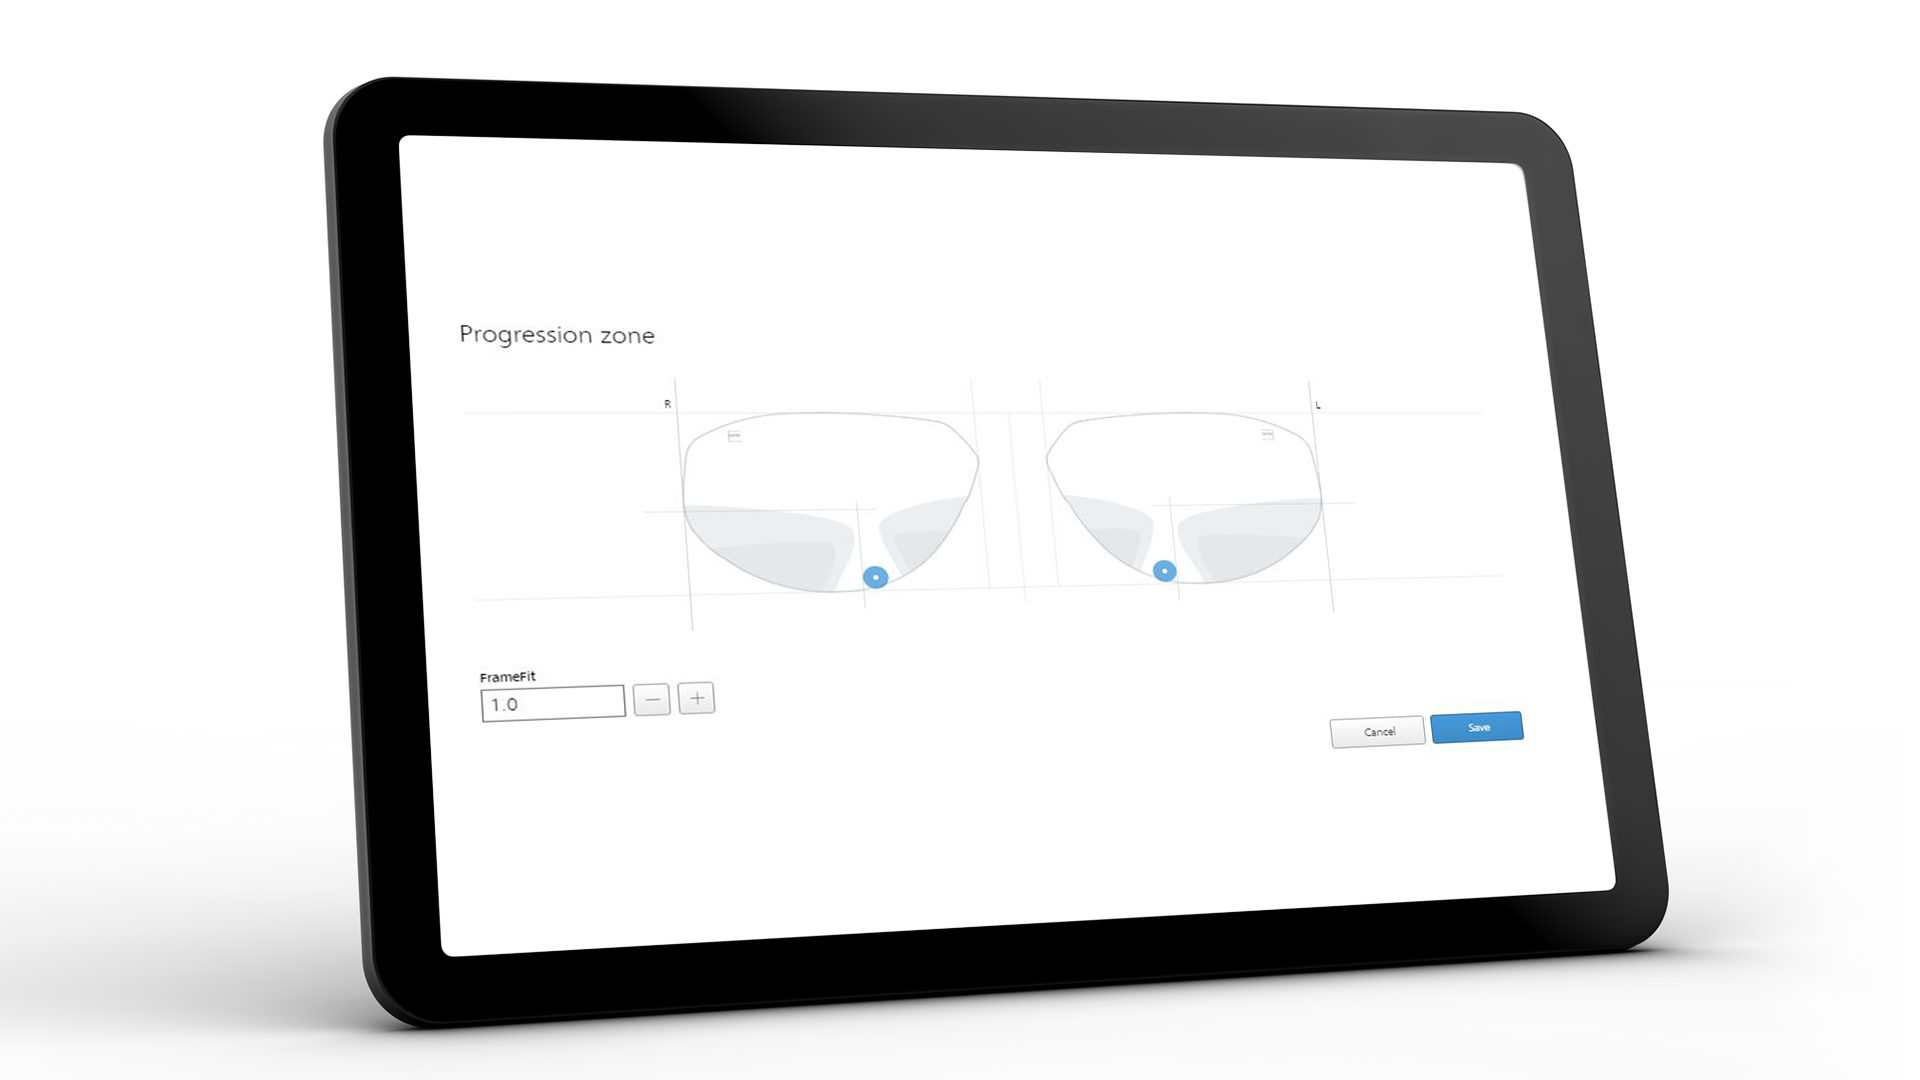 Schermo del tablet che mostra l'interfaccia ZEISS VISUSTORE per la zona di progressione 